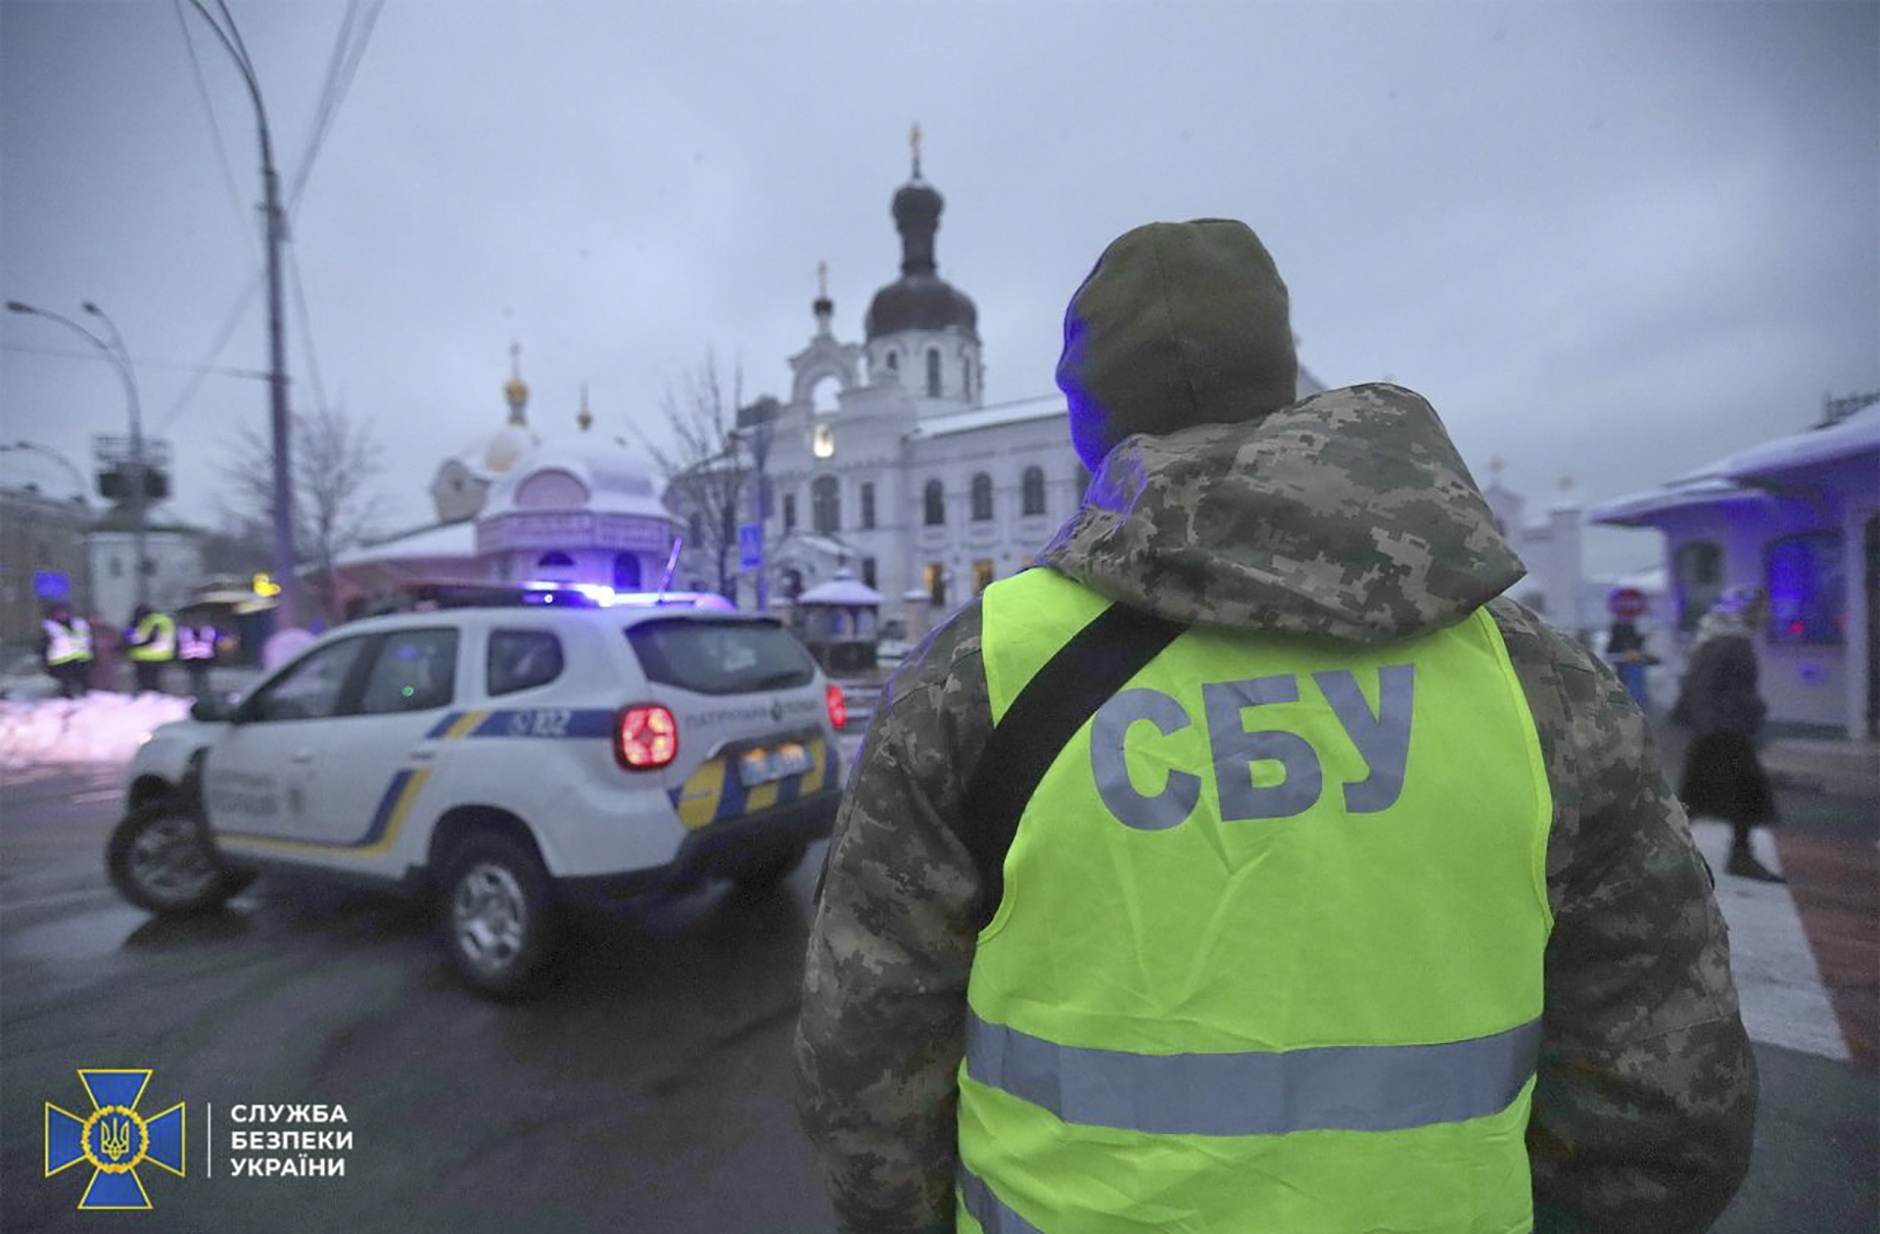 Operación de contrainteligencia del SBU en un monasterio de Kiev.